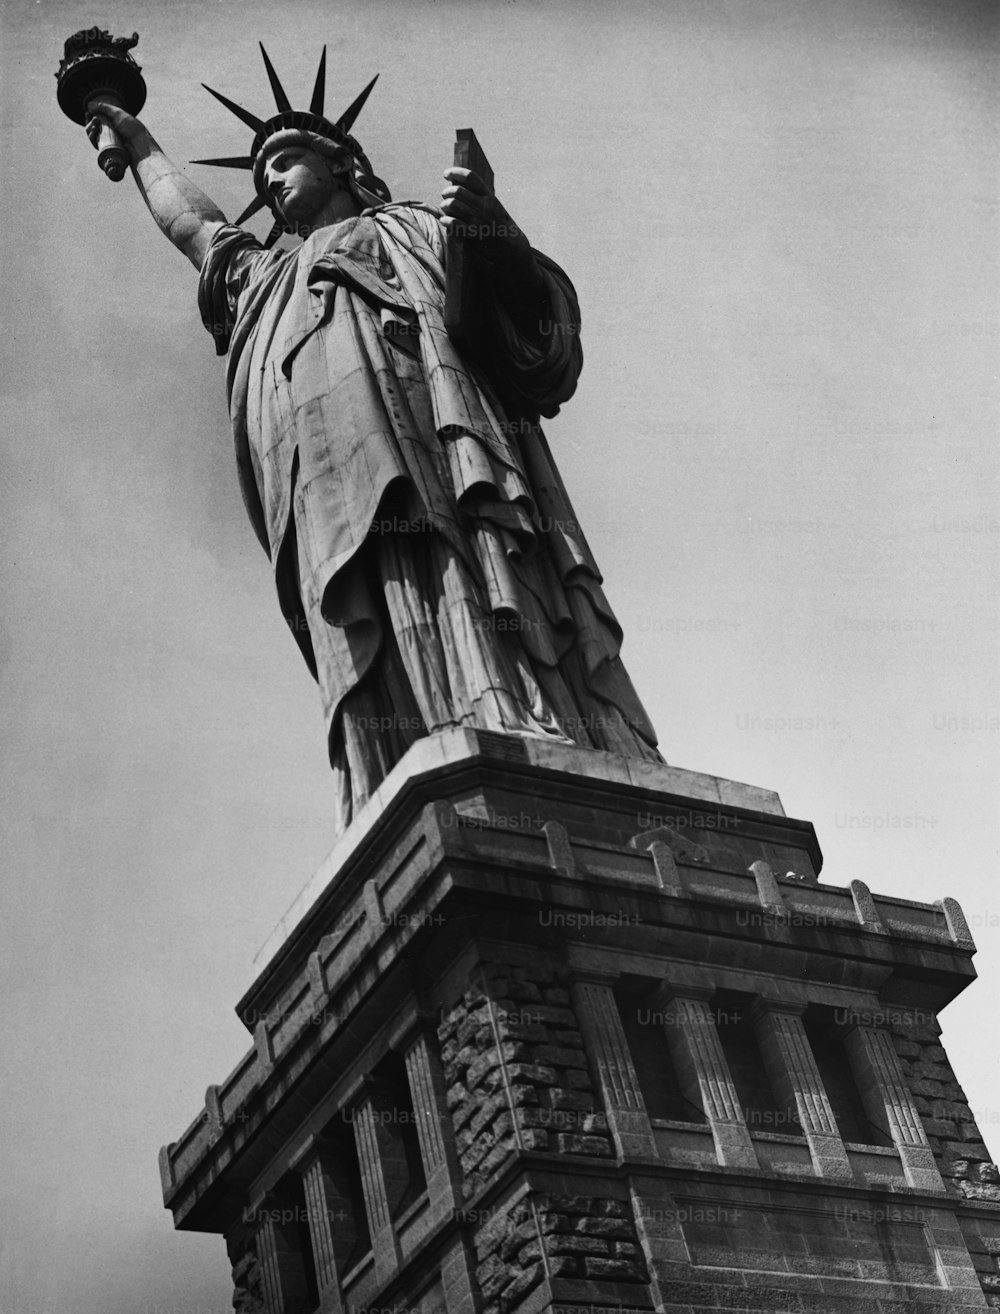 Die Freiheitsstatue auf Liberty Island in New York City, USA, um 1950.  (Foto von George Marks / Retrofile / Getty Images)